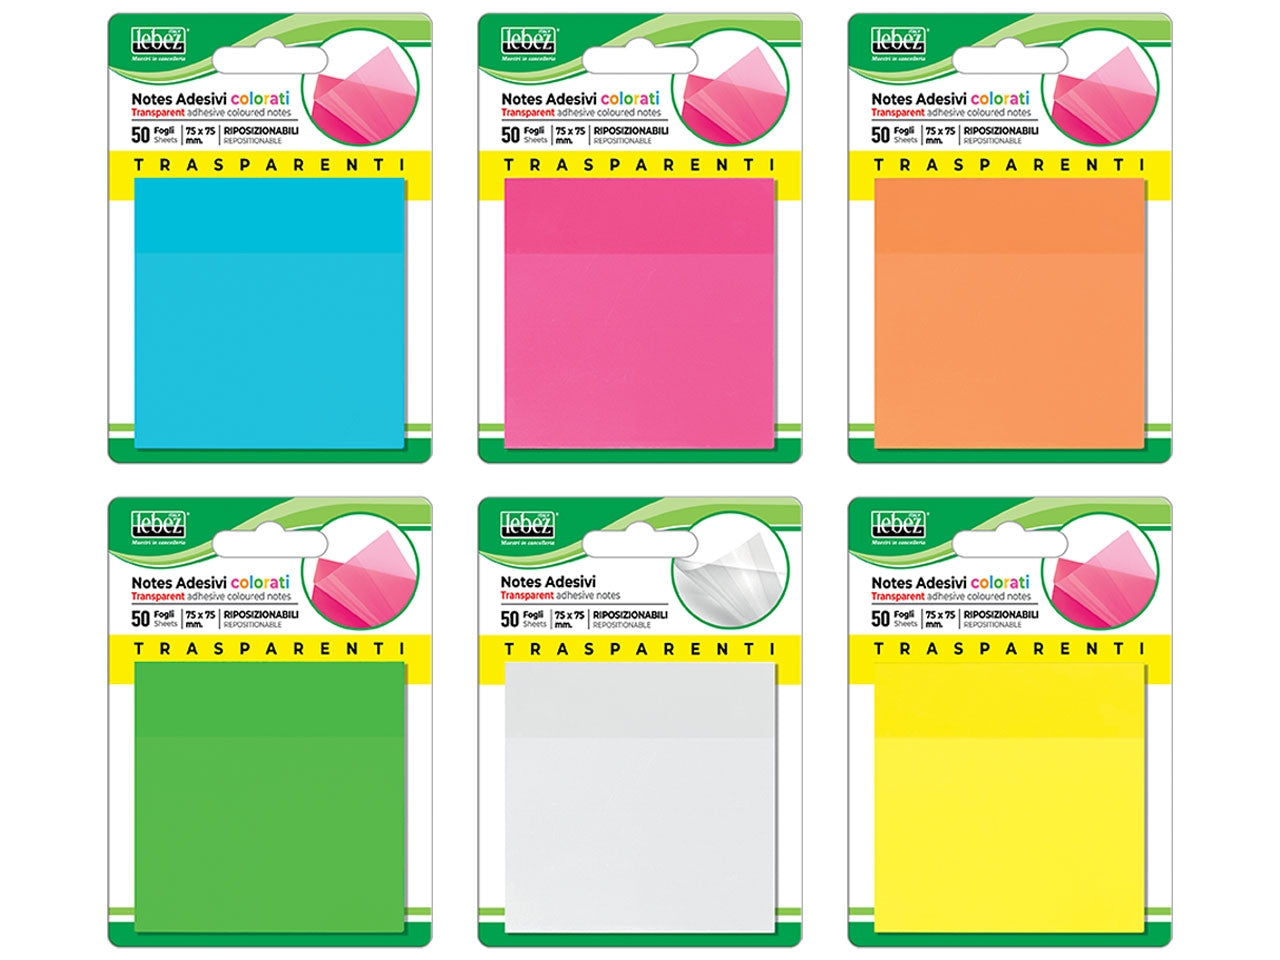 Notes adesivi trasparenti colorati 75x75mm riposizionabili - blocchetto da 50 fogli notes